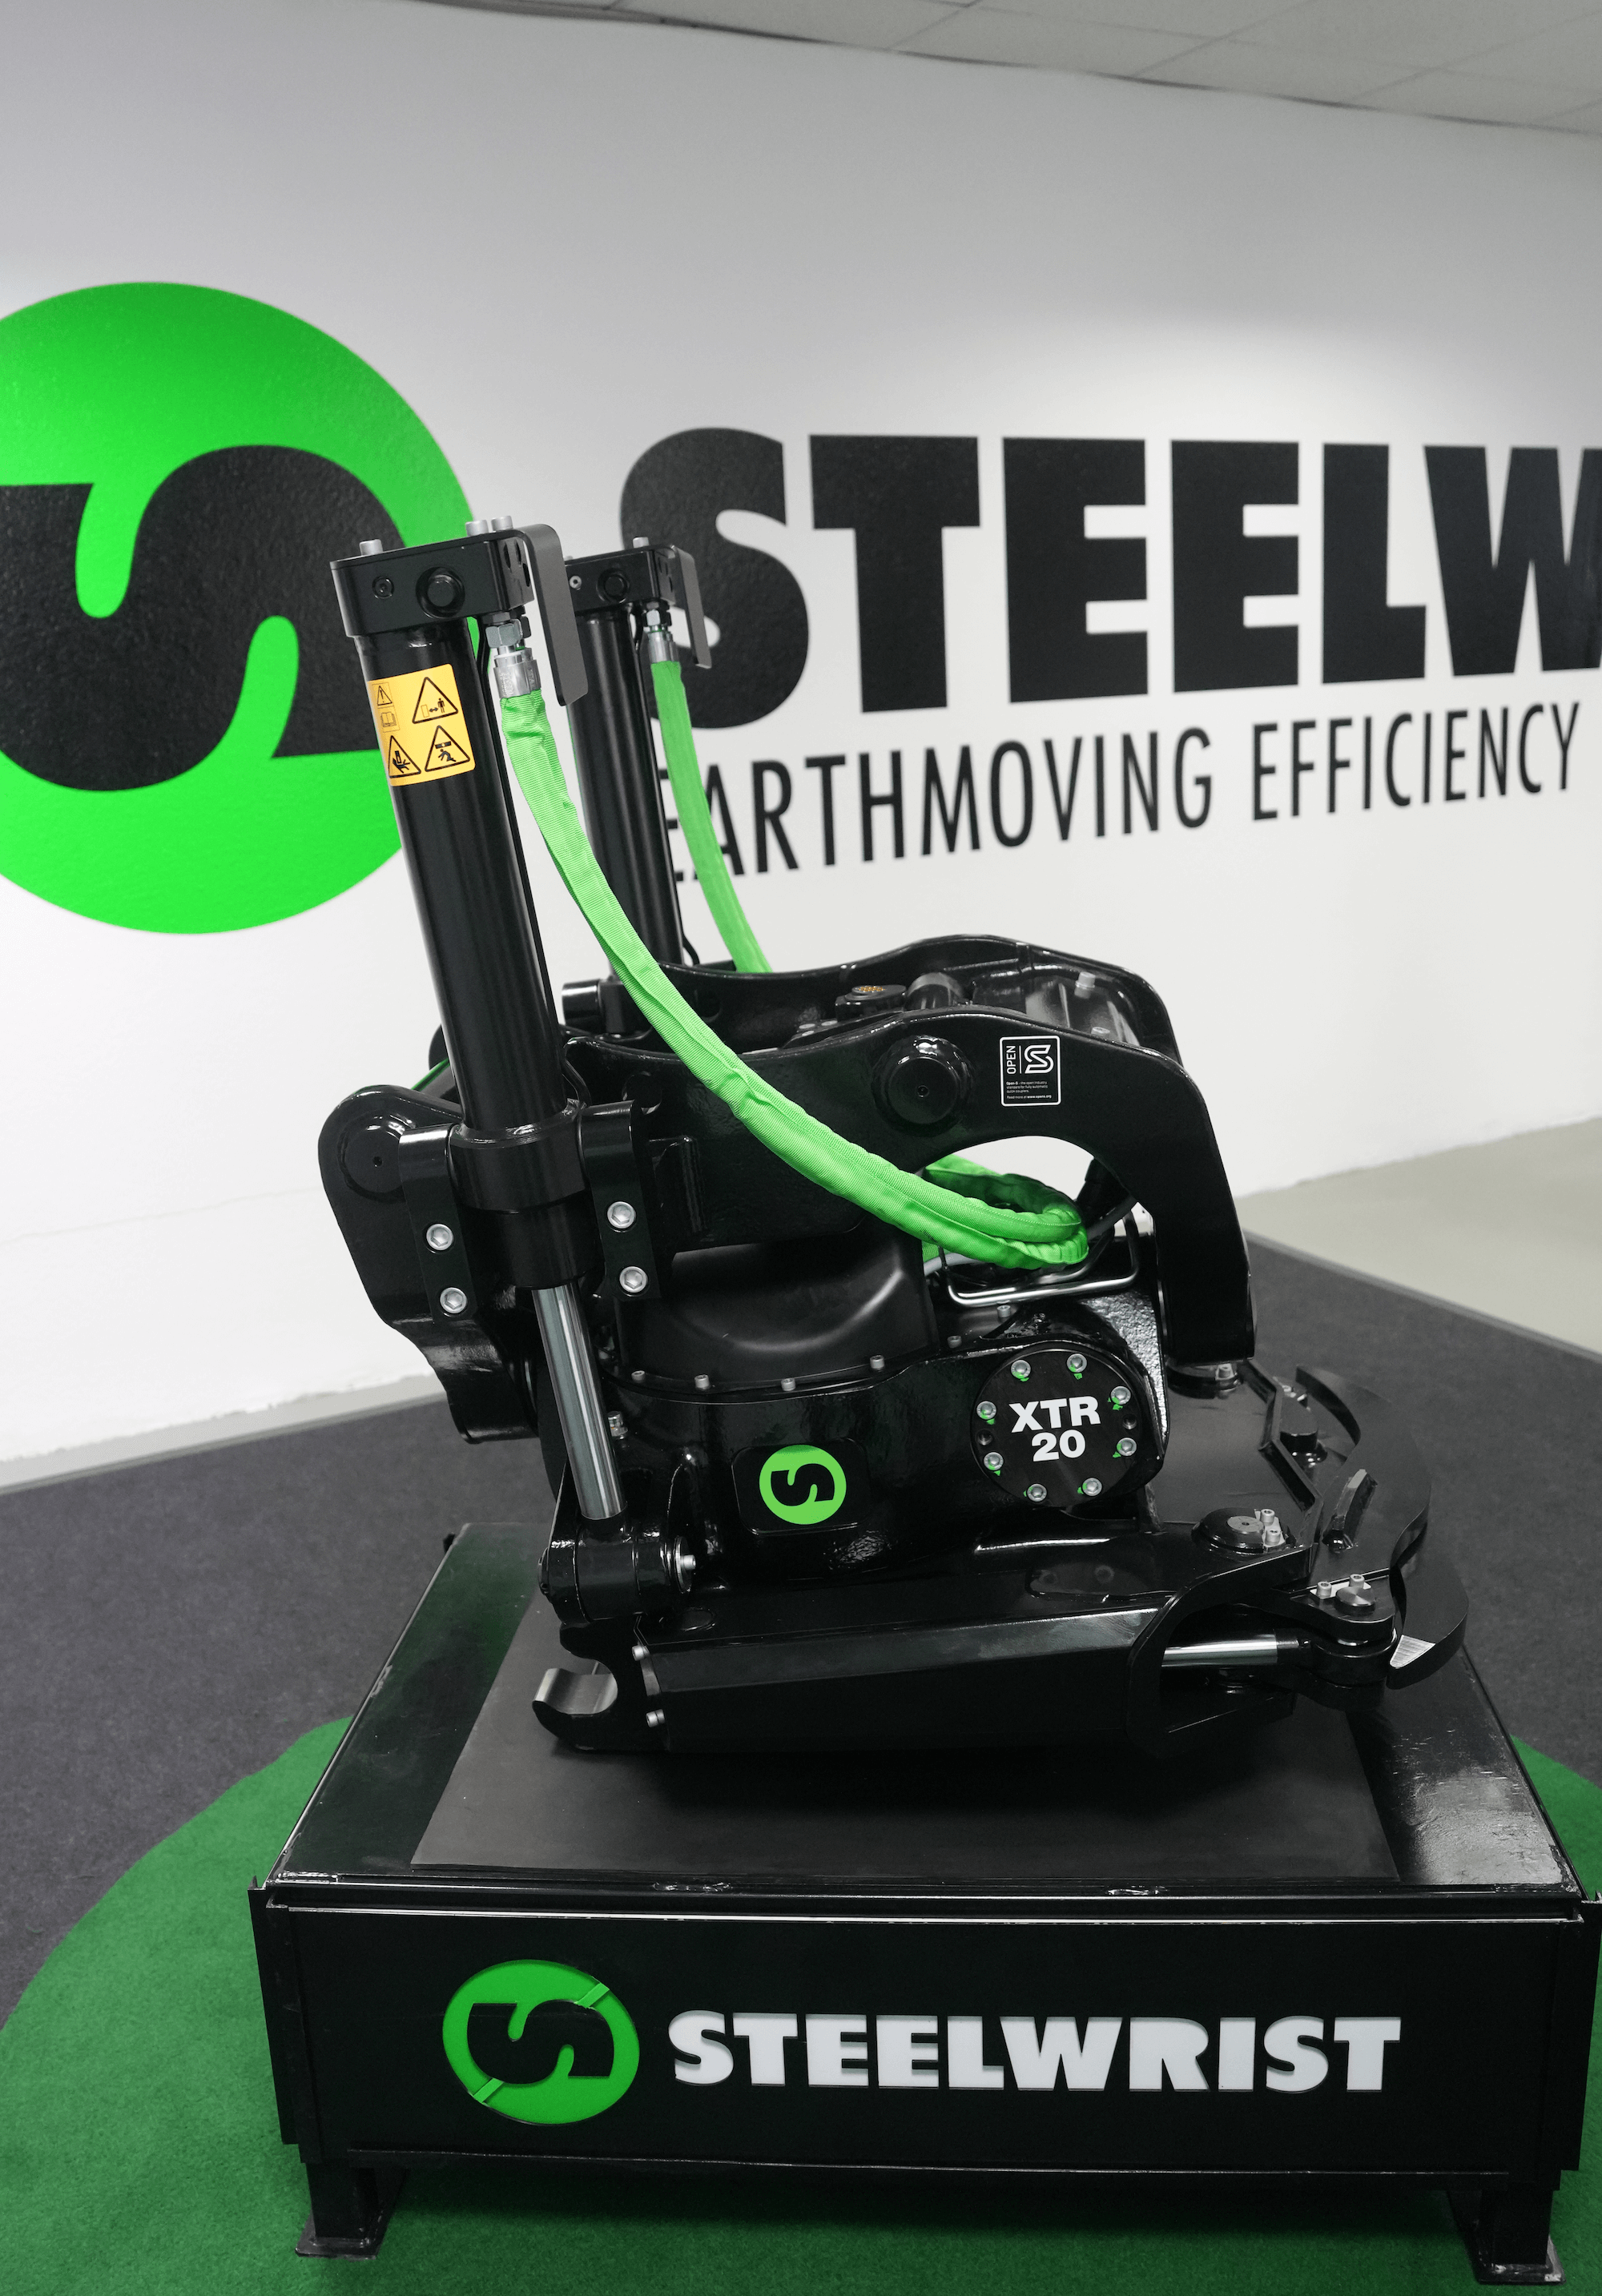 Il nuovo Steelwrist XTR20 è un'attrezzatura di terza generazione